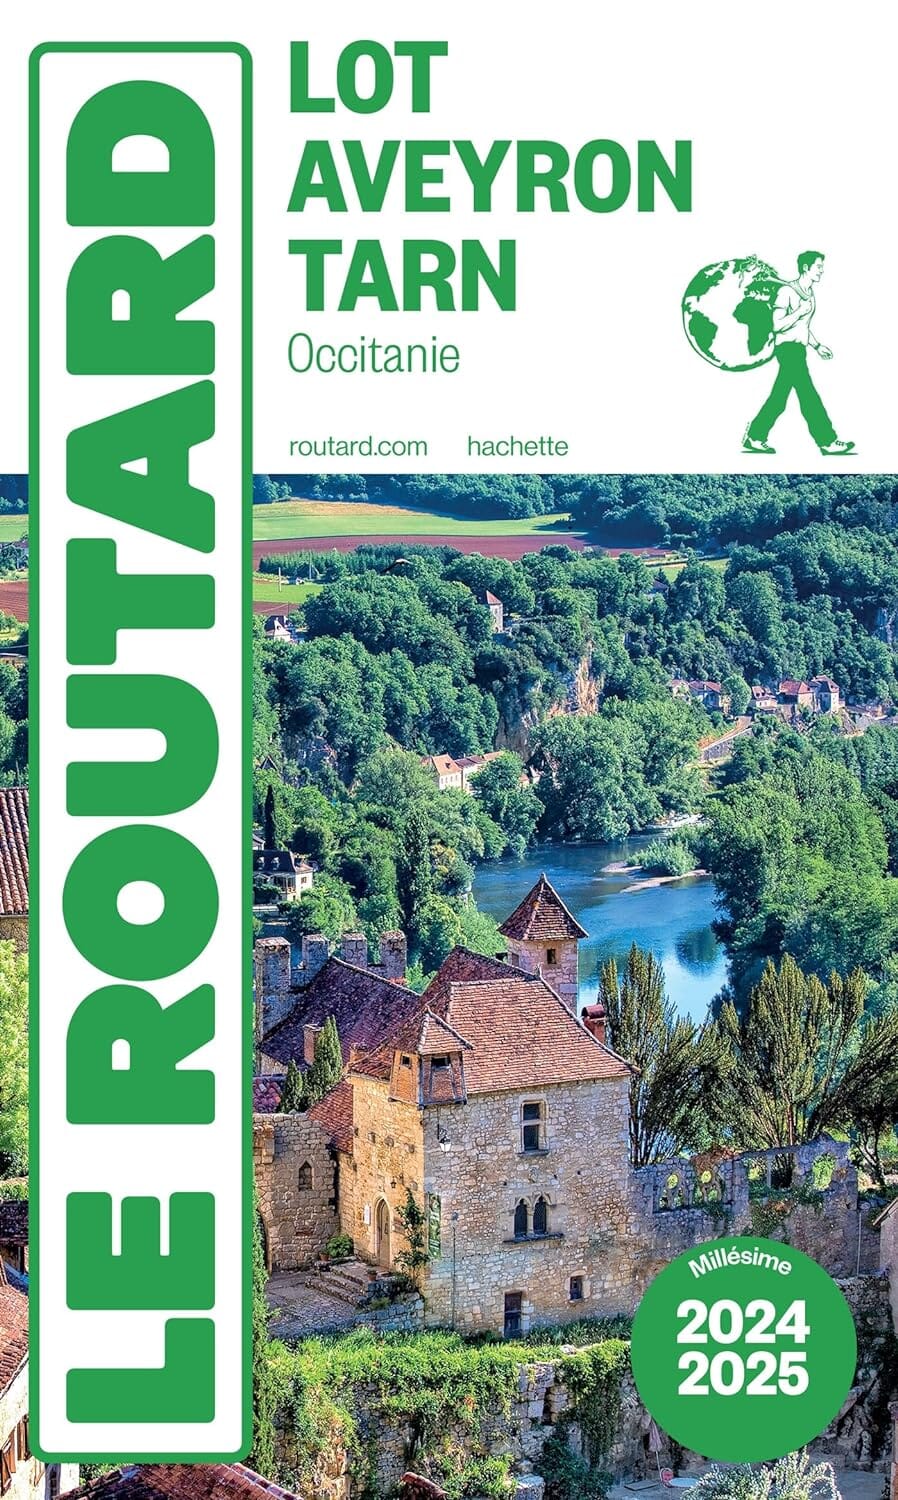 Guide du Routard - Lot, Aveyron, Tarn 2024/25 | Hachette guide de voyage Hachette 